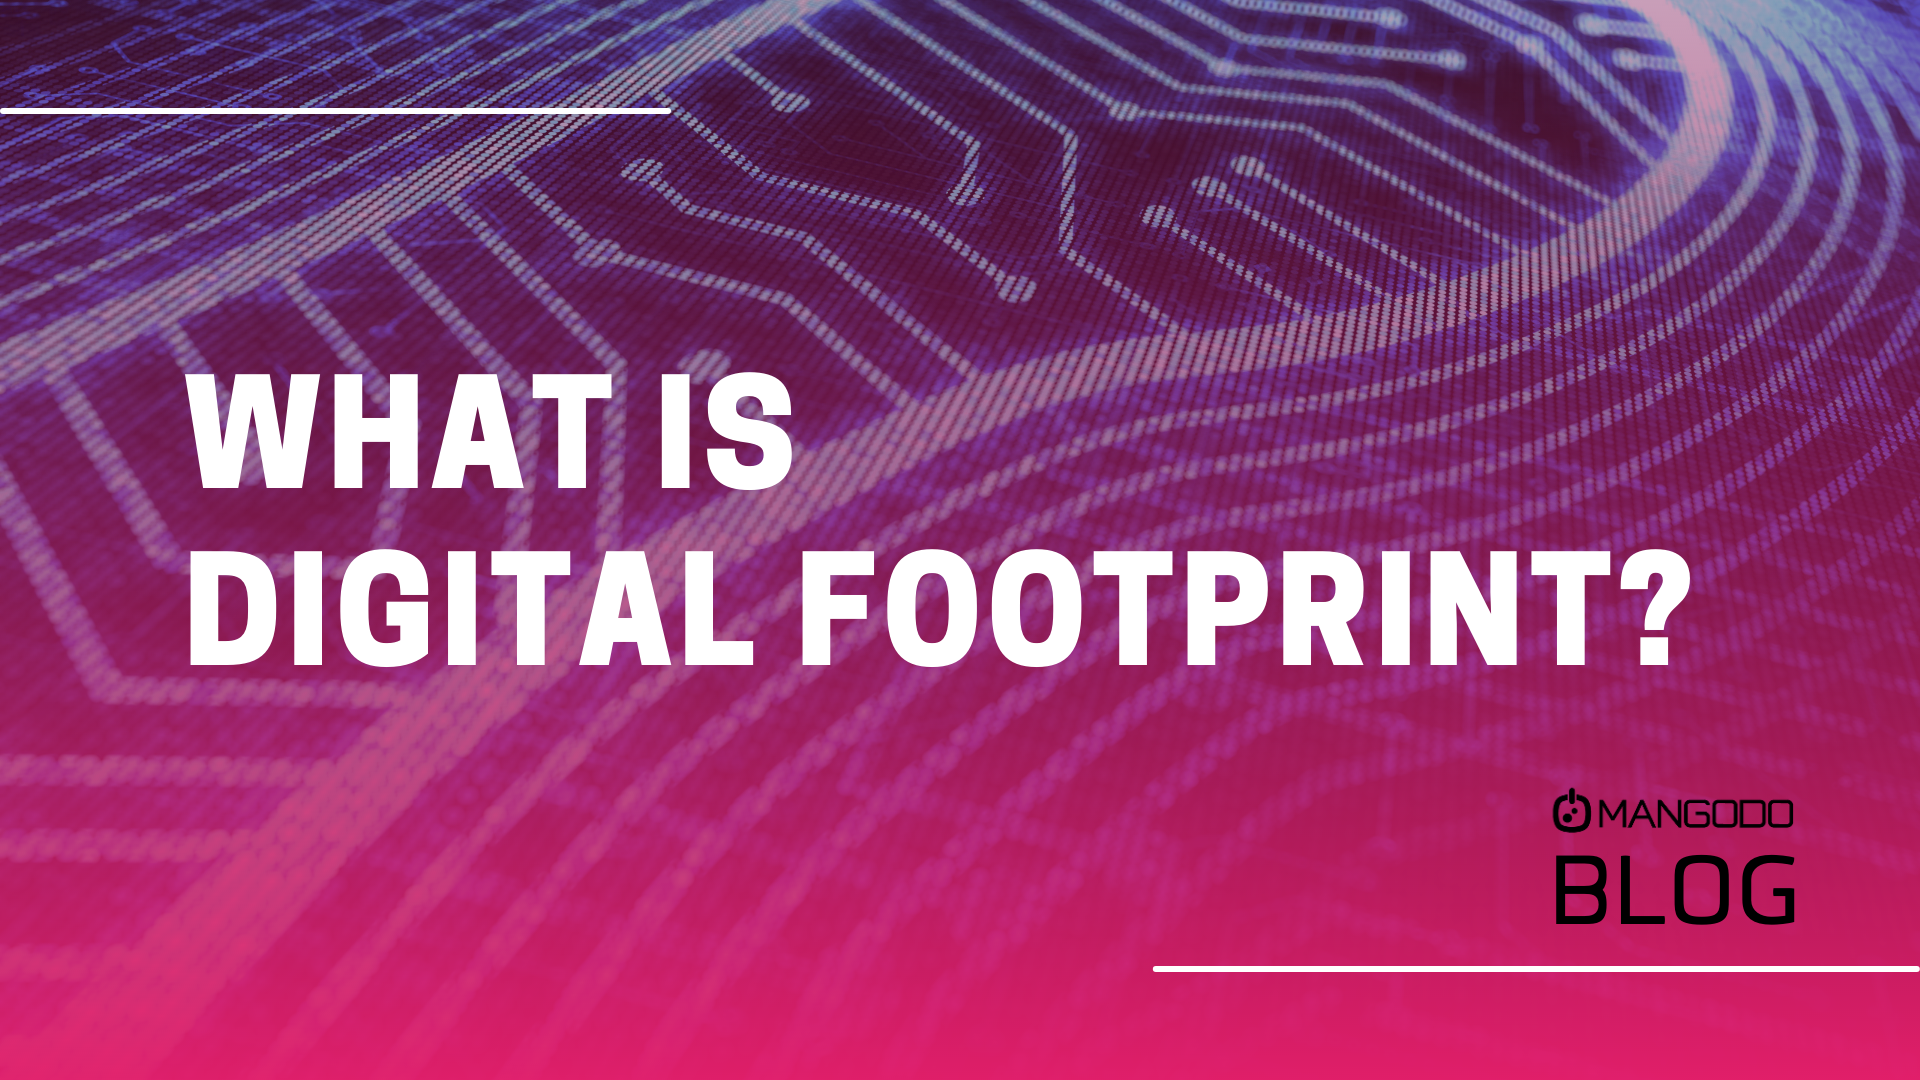 What is Digital Footprint?